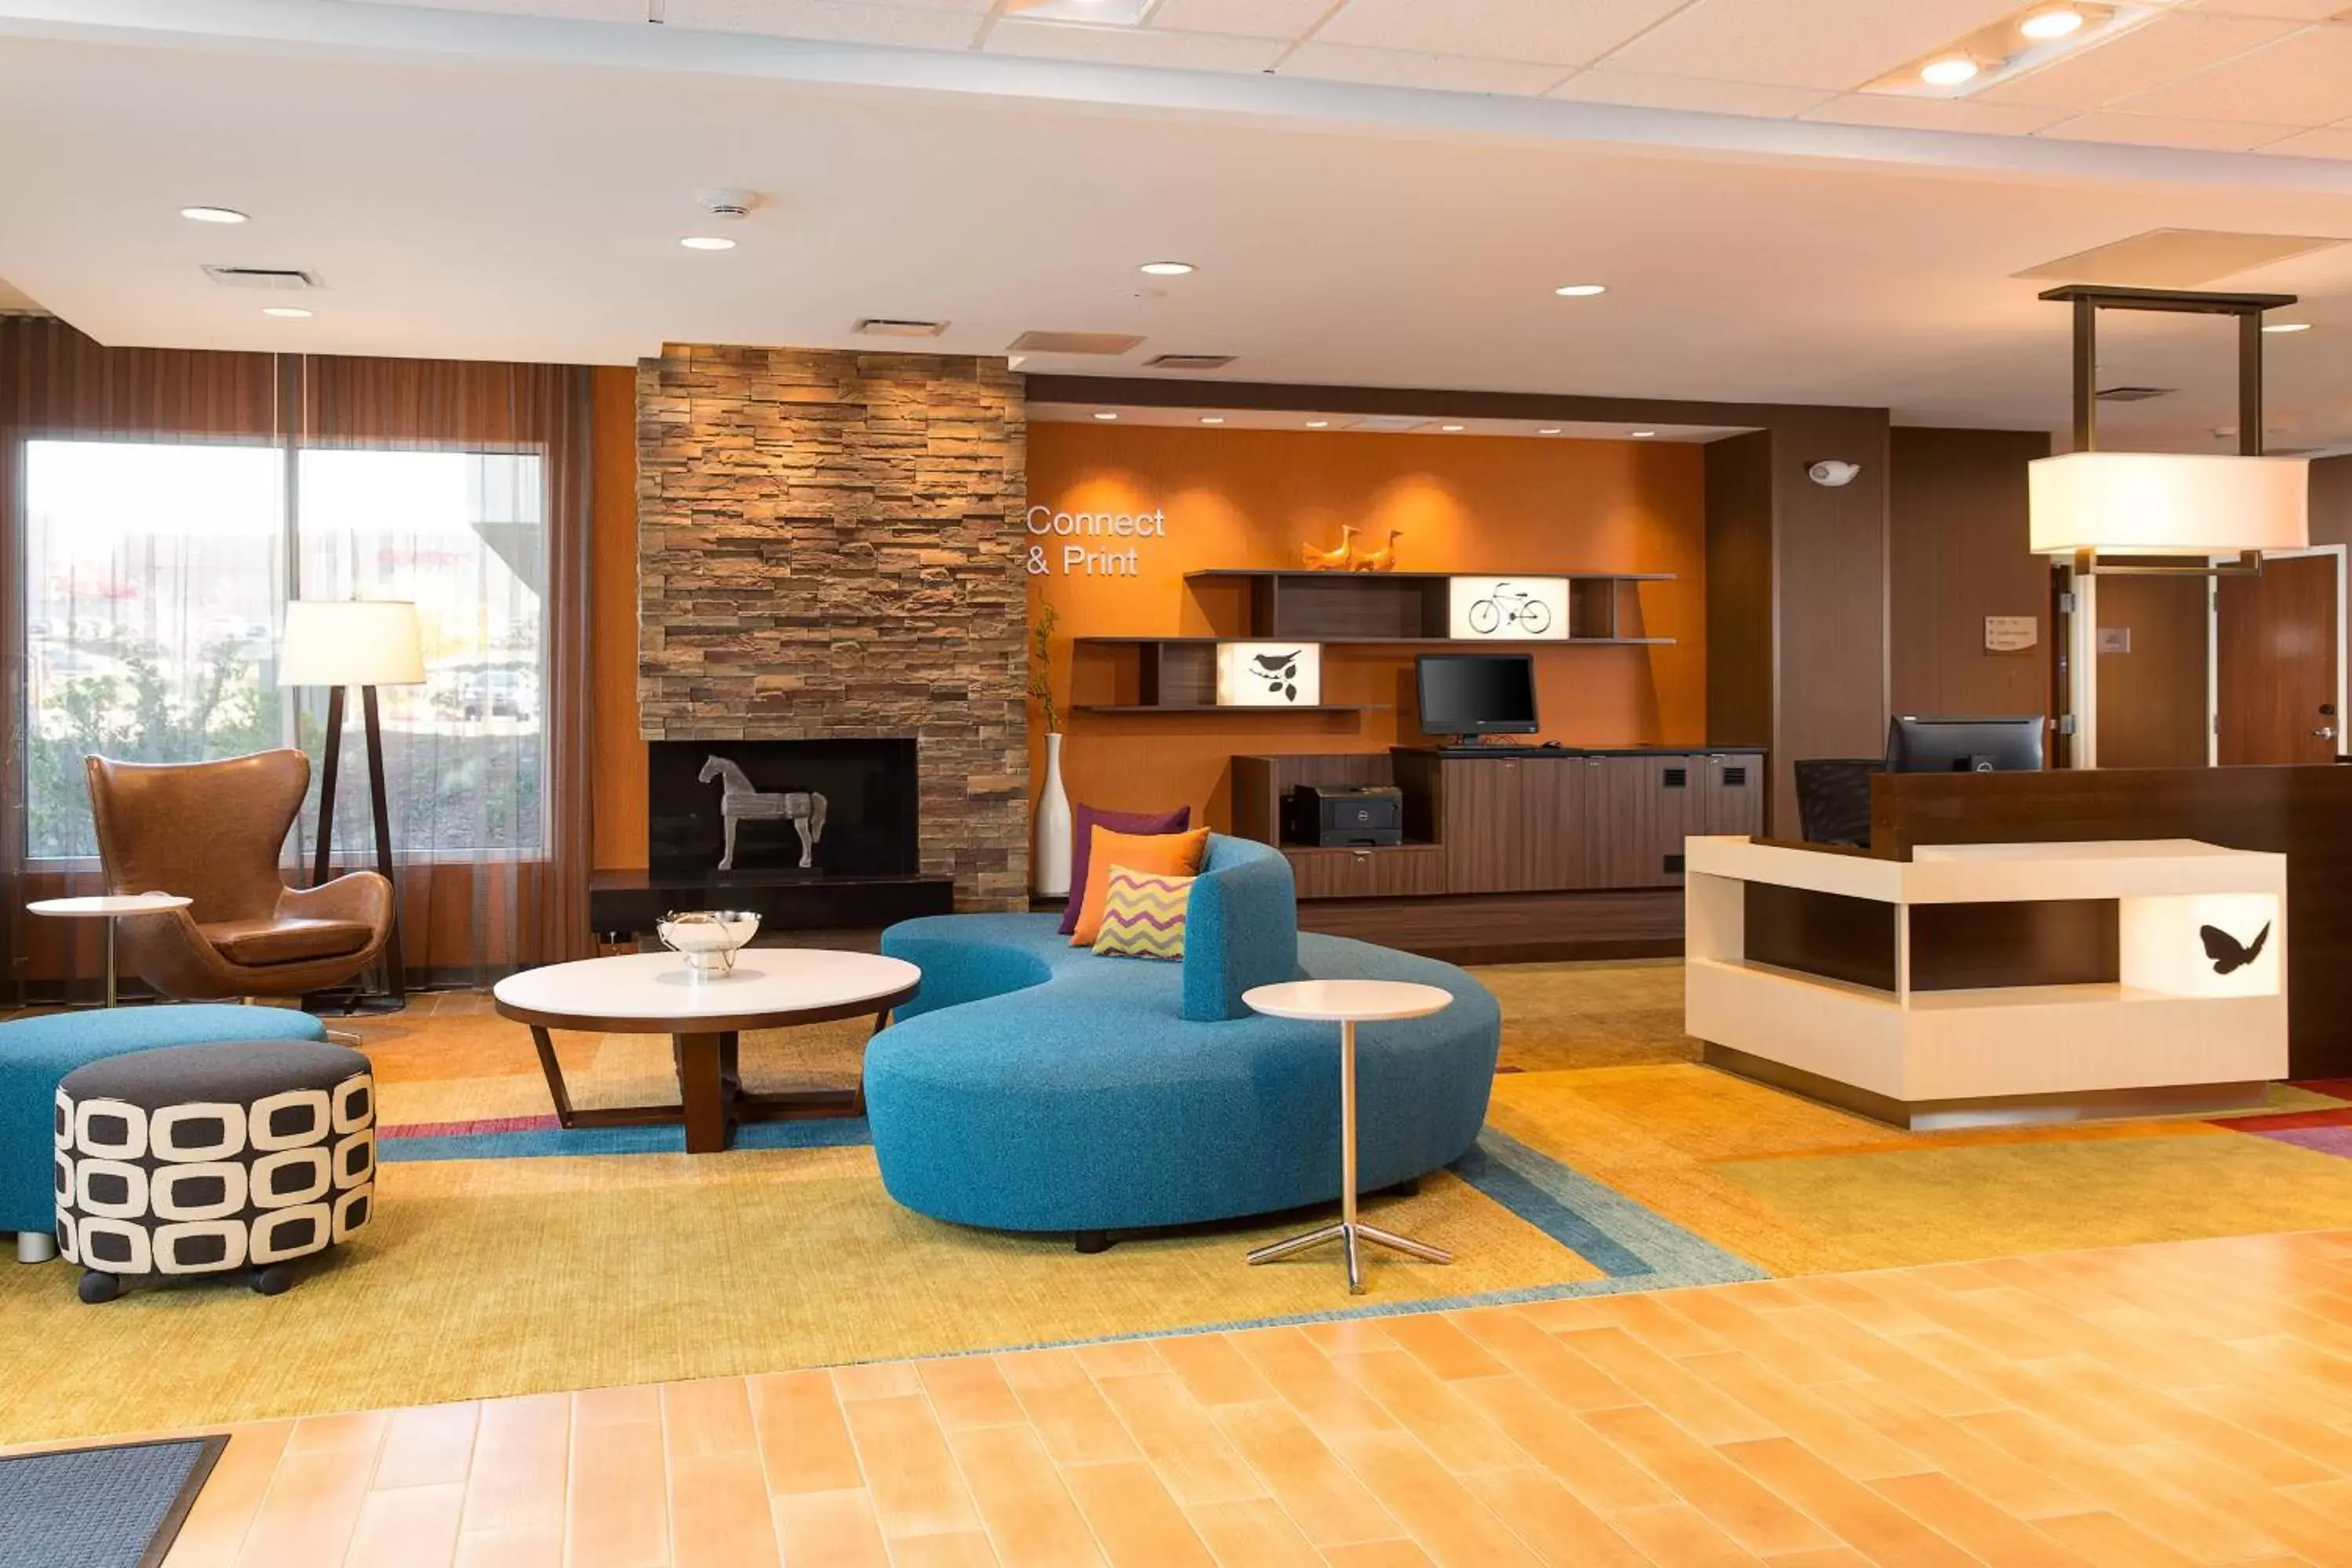 Lobby or reception, Lobby/Reception in Fairfield Inn & Suites by Marriott Sacramento Folsom